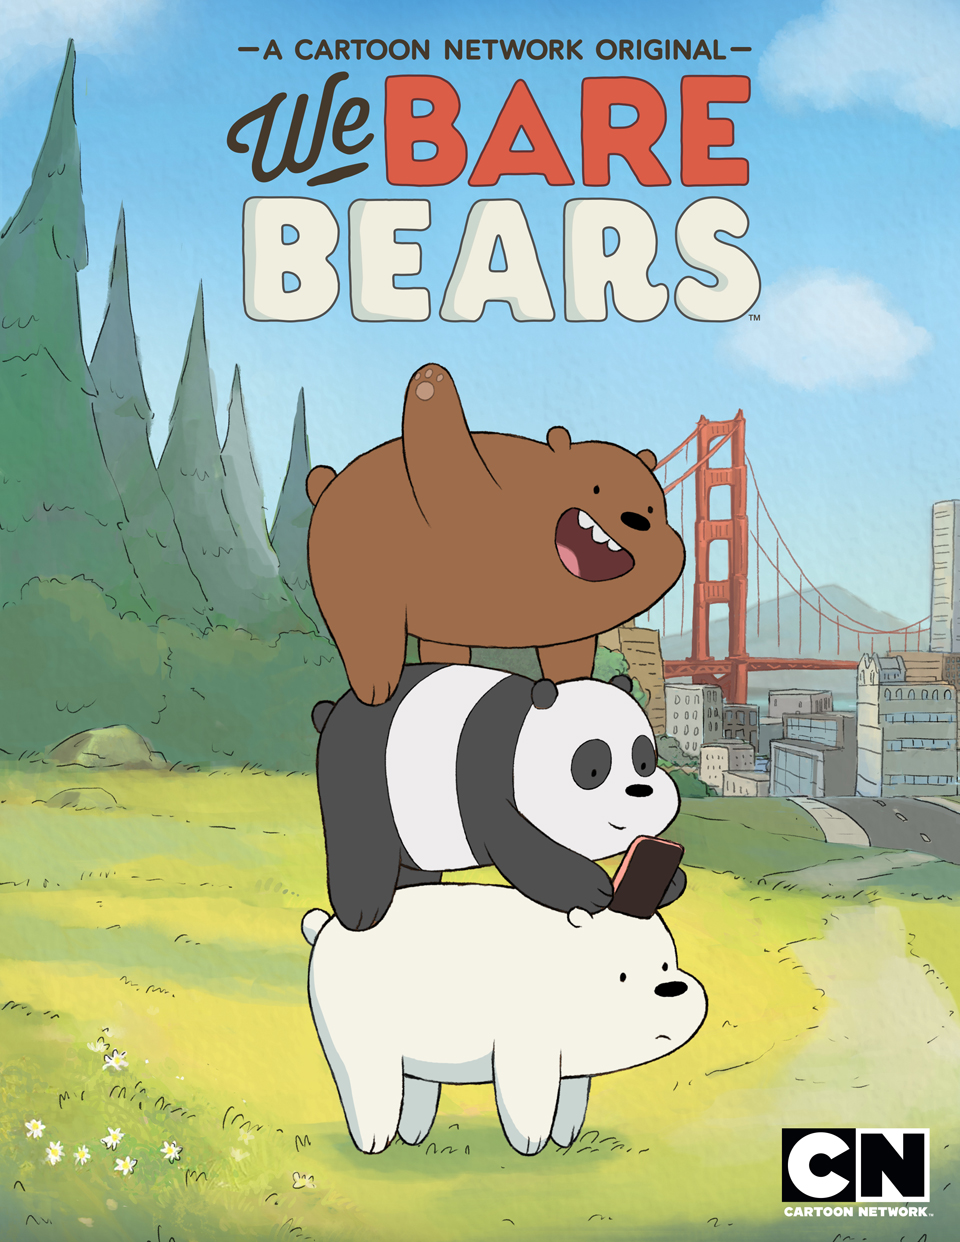 Tìm kiếm thông tin về We Bare Bears bằng tiếng Việt? Wikia We Bare Bears Tiếng Việt chính là nơi được khuyến khích cho những người hâm mộ We Bare Bears.